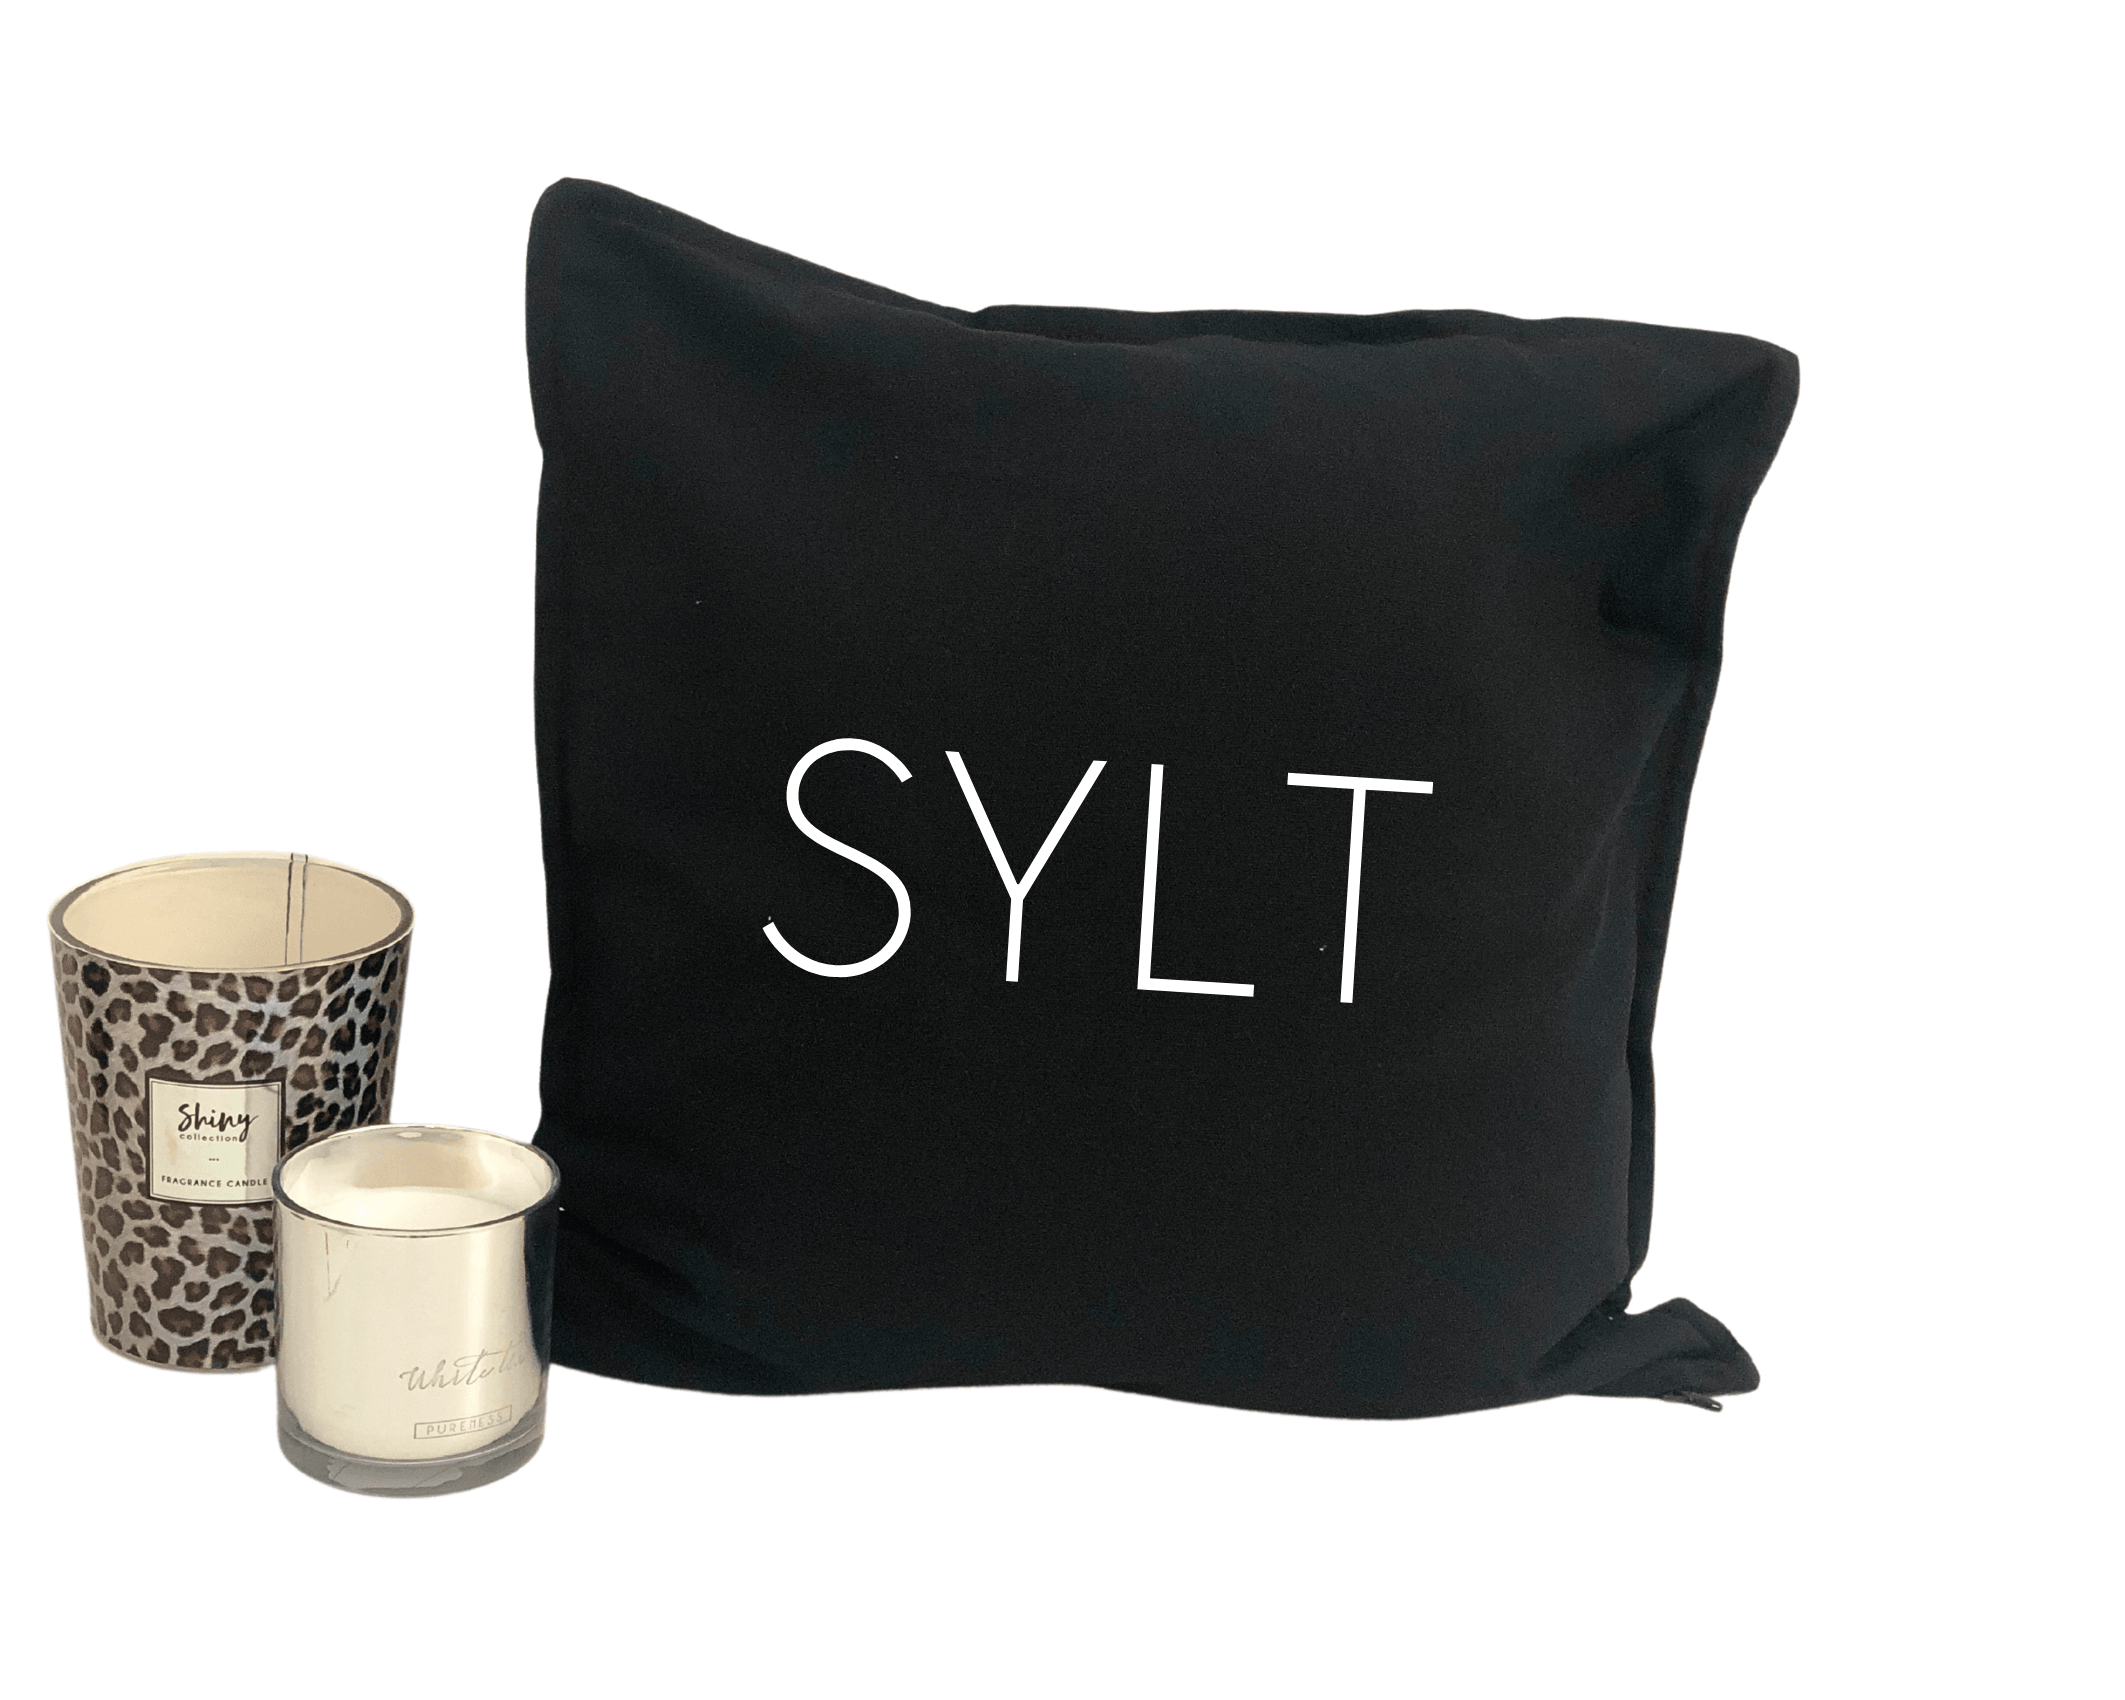 Kissen | SYLT | Kissenbezug | Syltkissen - Roo's Gift Shop